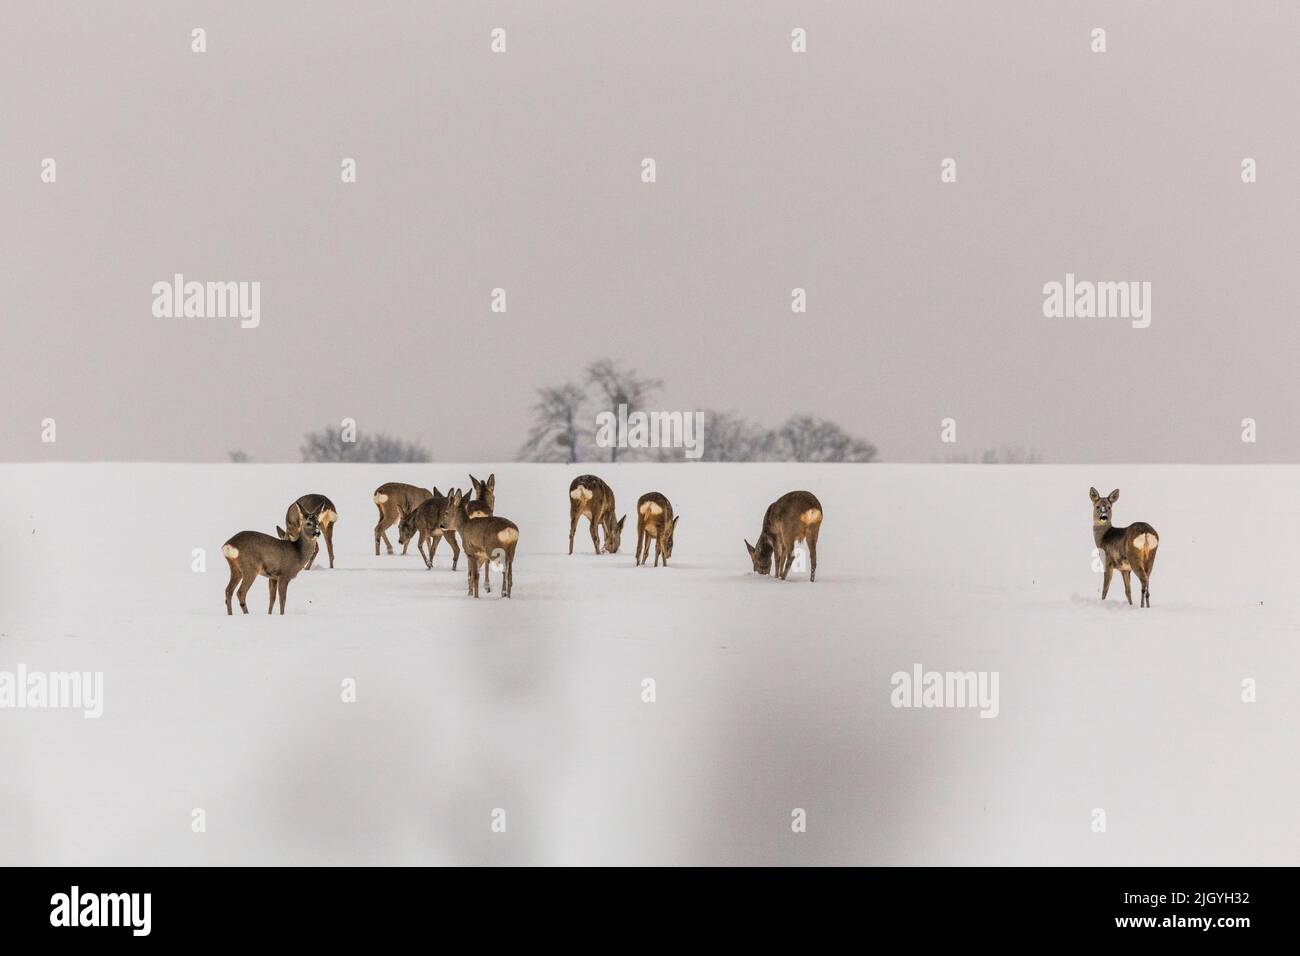 Eine Gruppe von Hirschen, die auf einem schneebedeckten Feld auf Nahrungssuche gehen Stockfoto